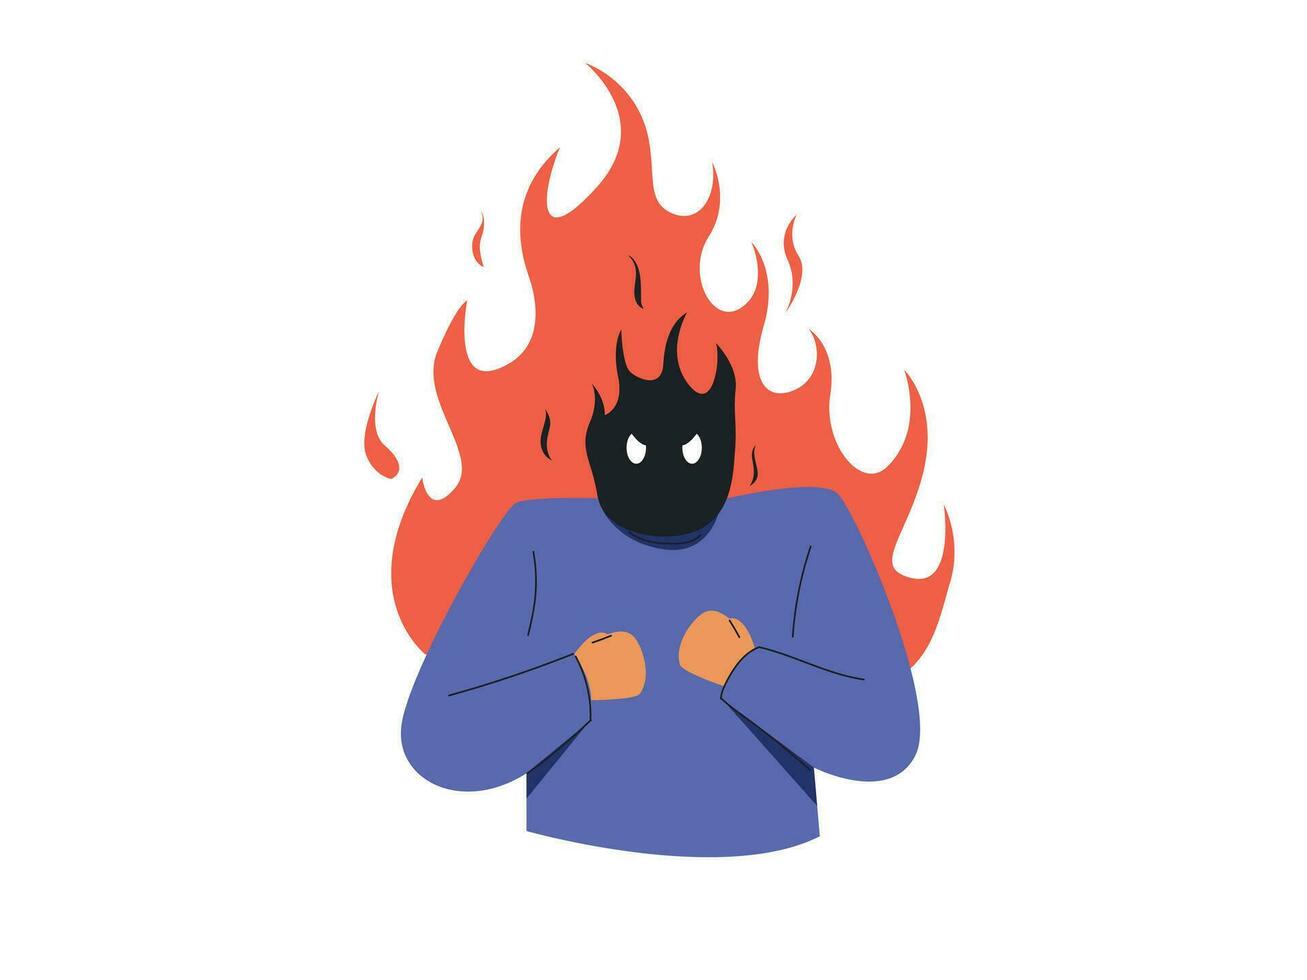 Mann Charakter ausdrücken Wut. wütend Mann im ein Flamme Emotion Vektor Illustration